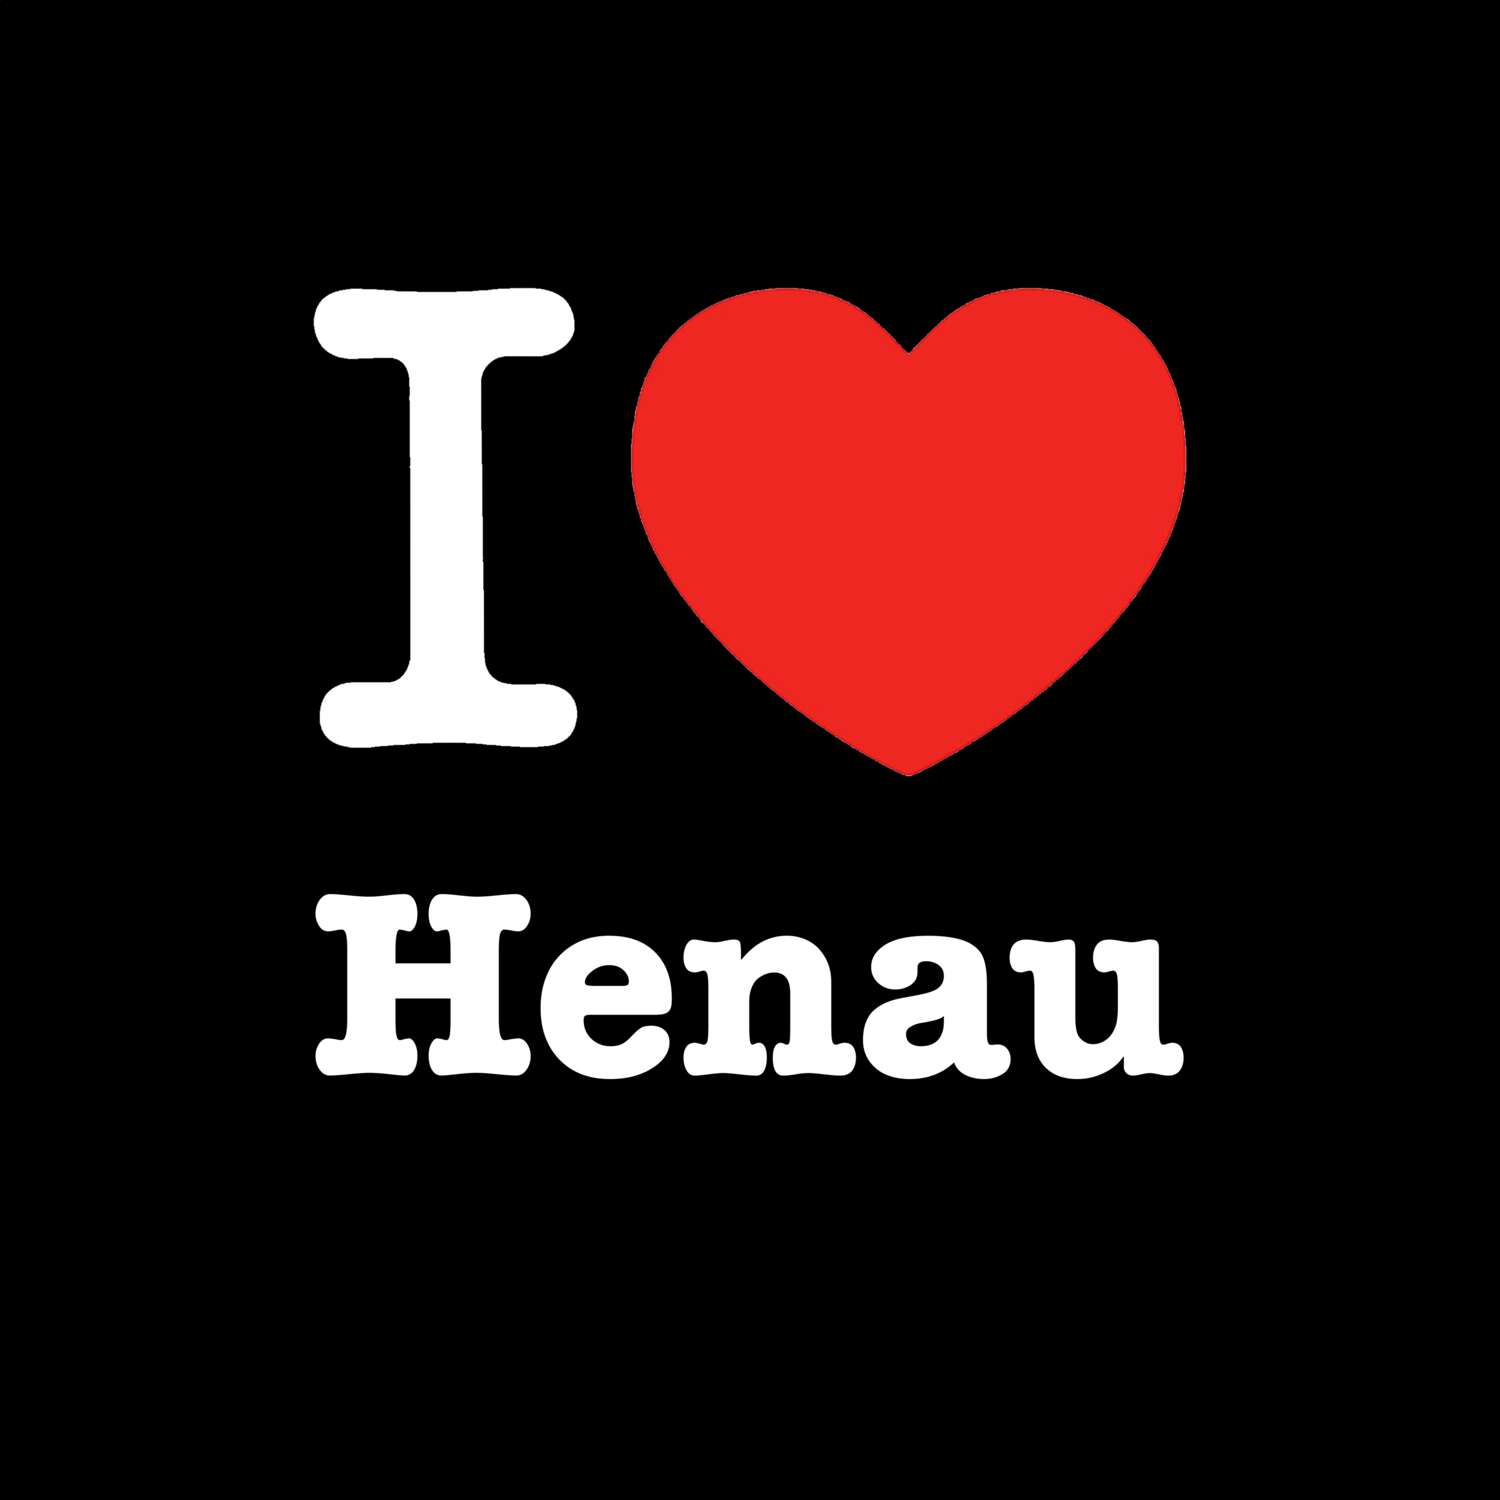 Henau T-Shirt »I love«